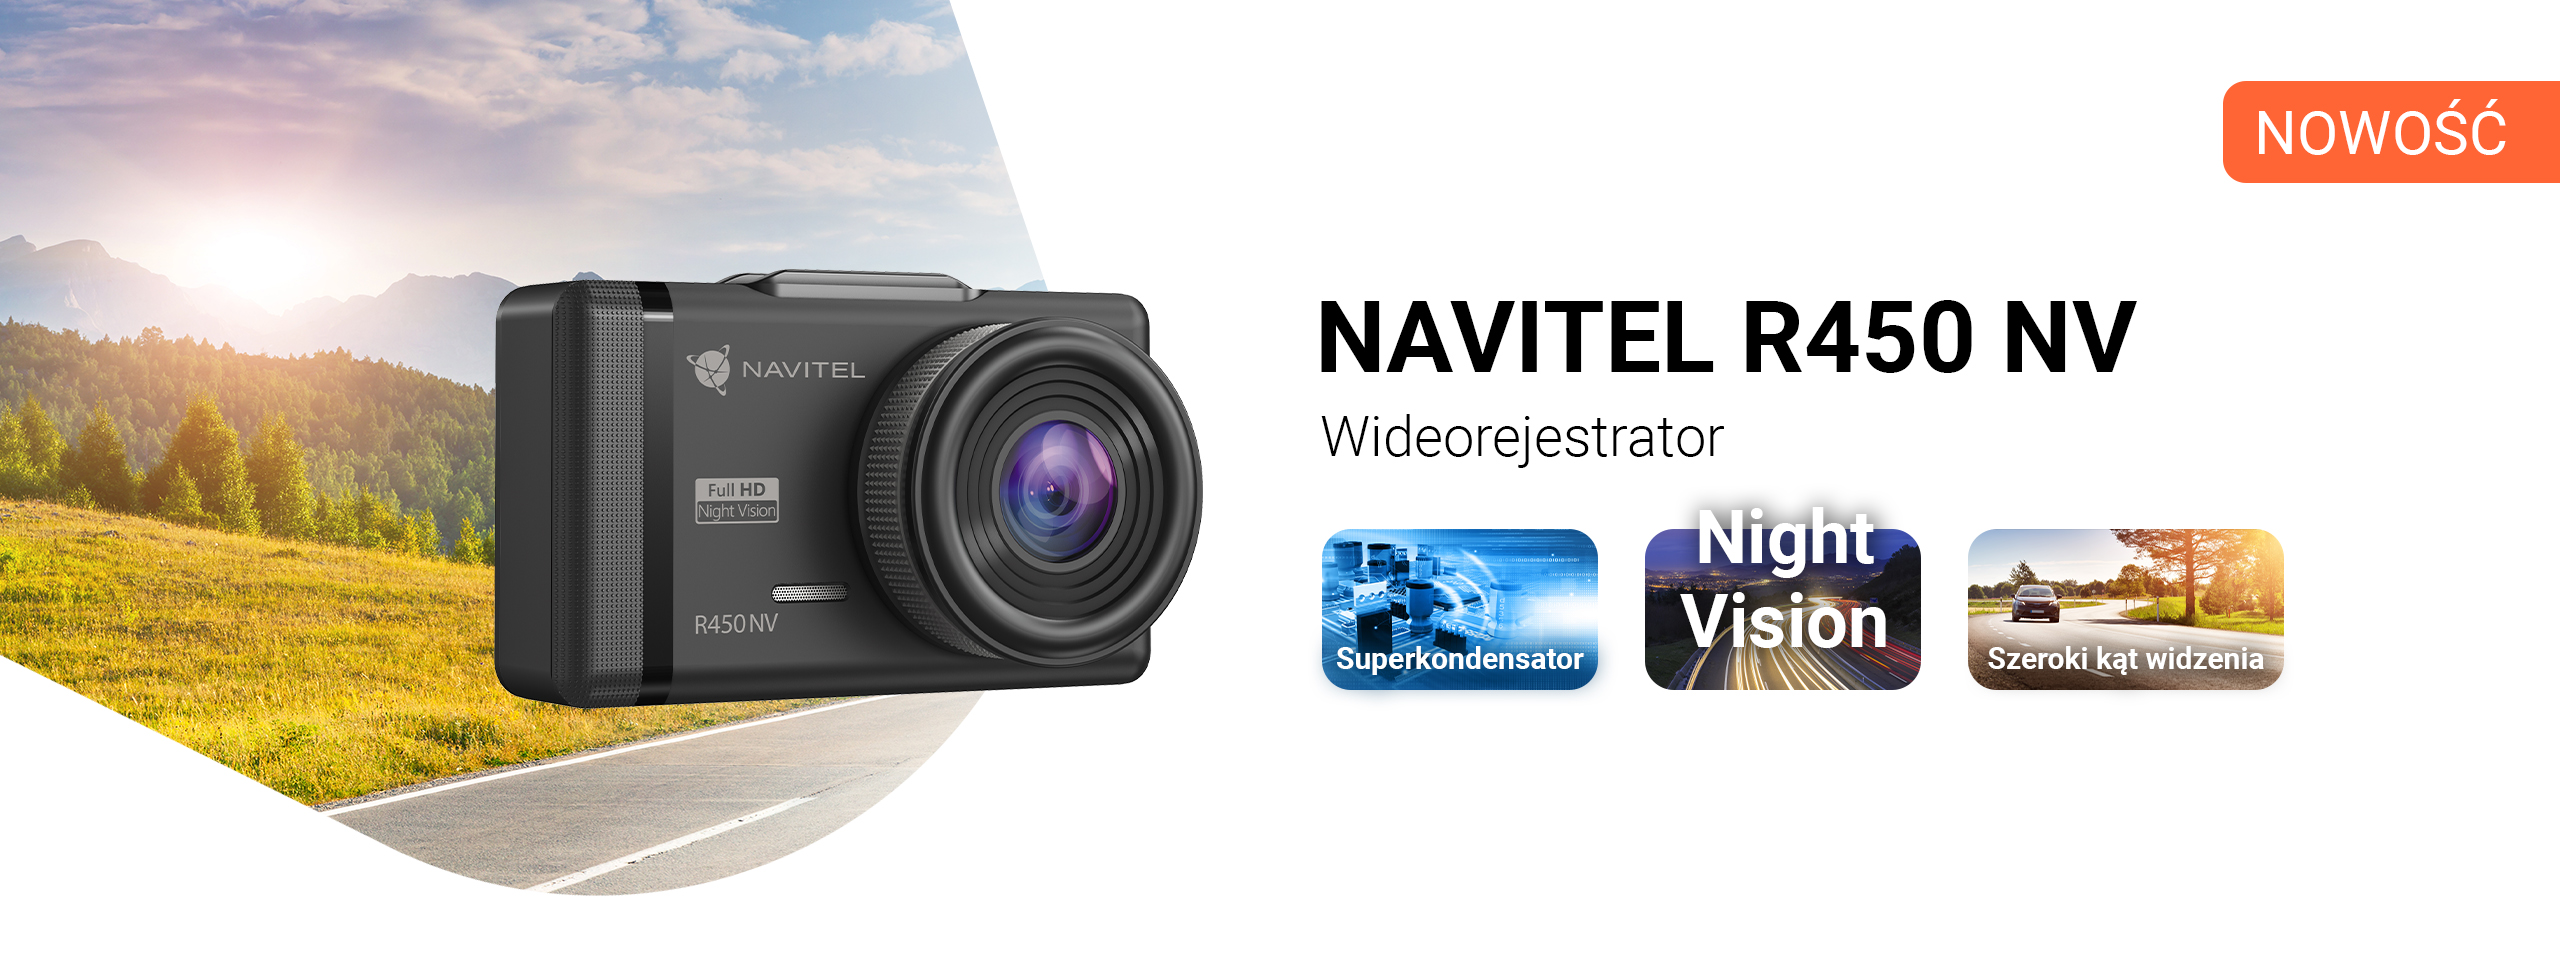 NAVITEL R450 NV – dyskretny wideorejestrator z wbudowanym superkondensatorem